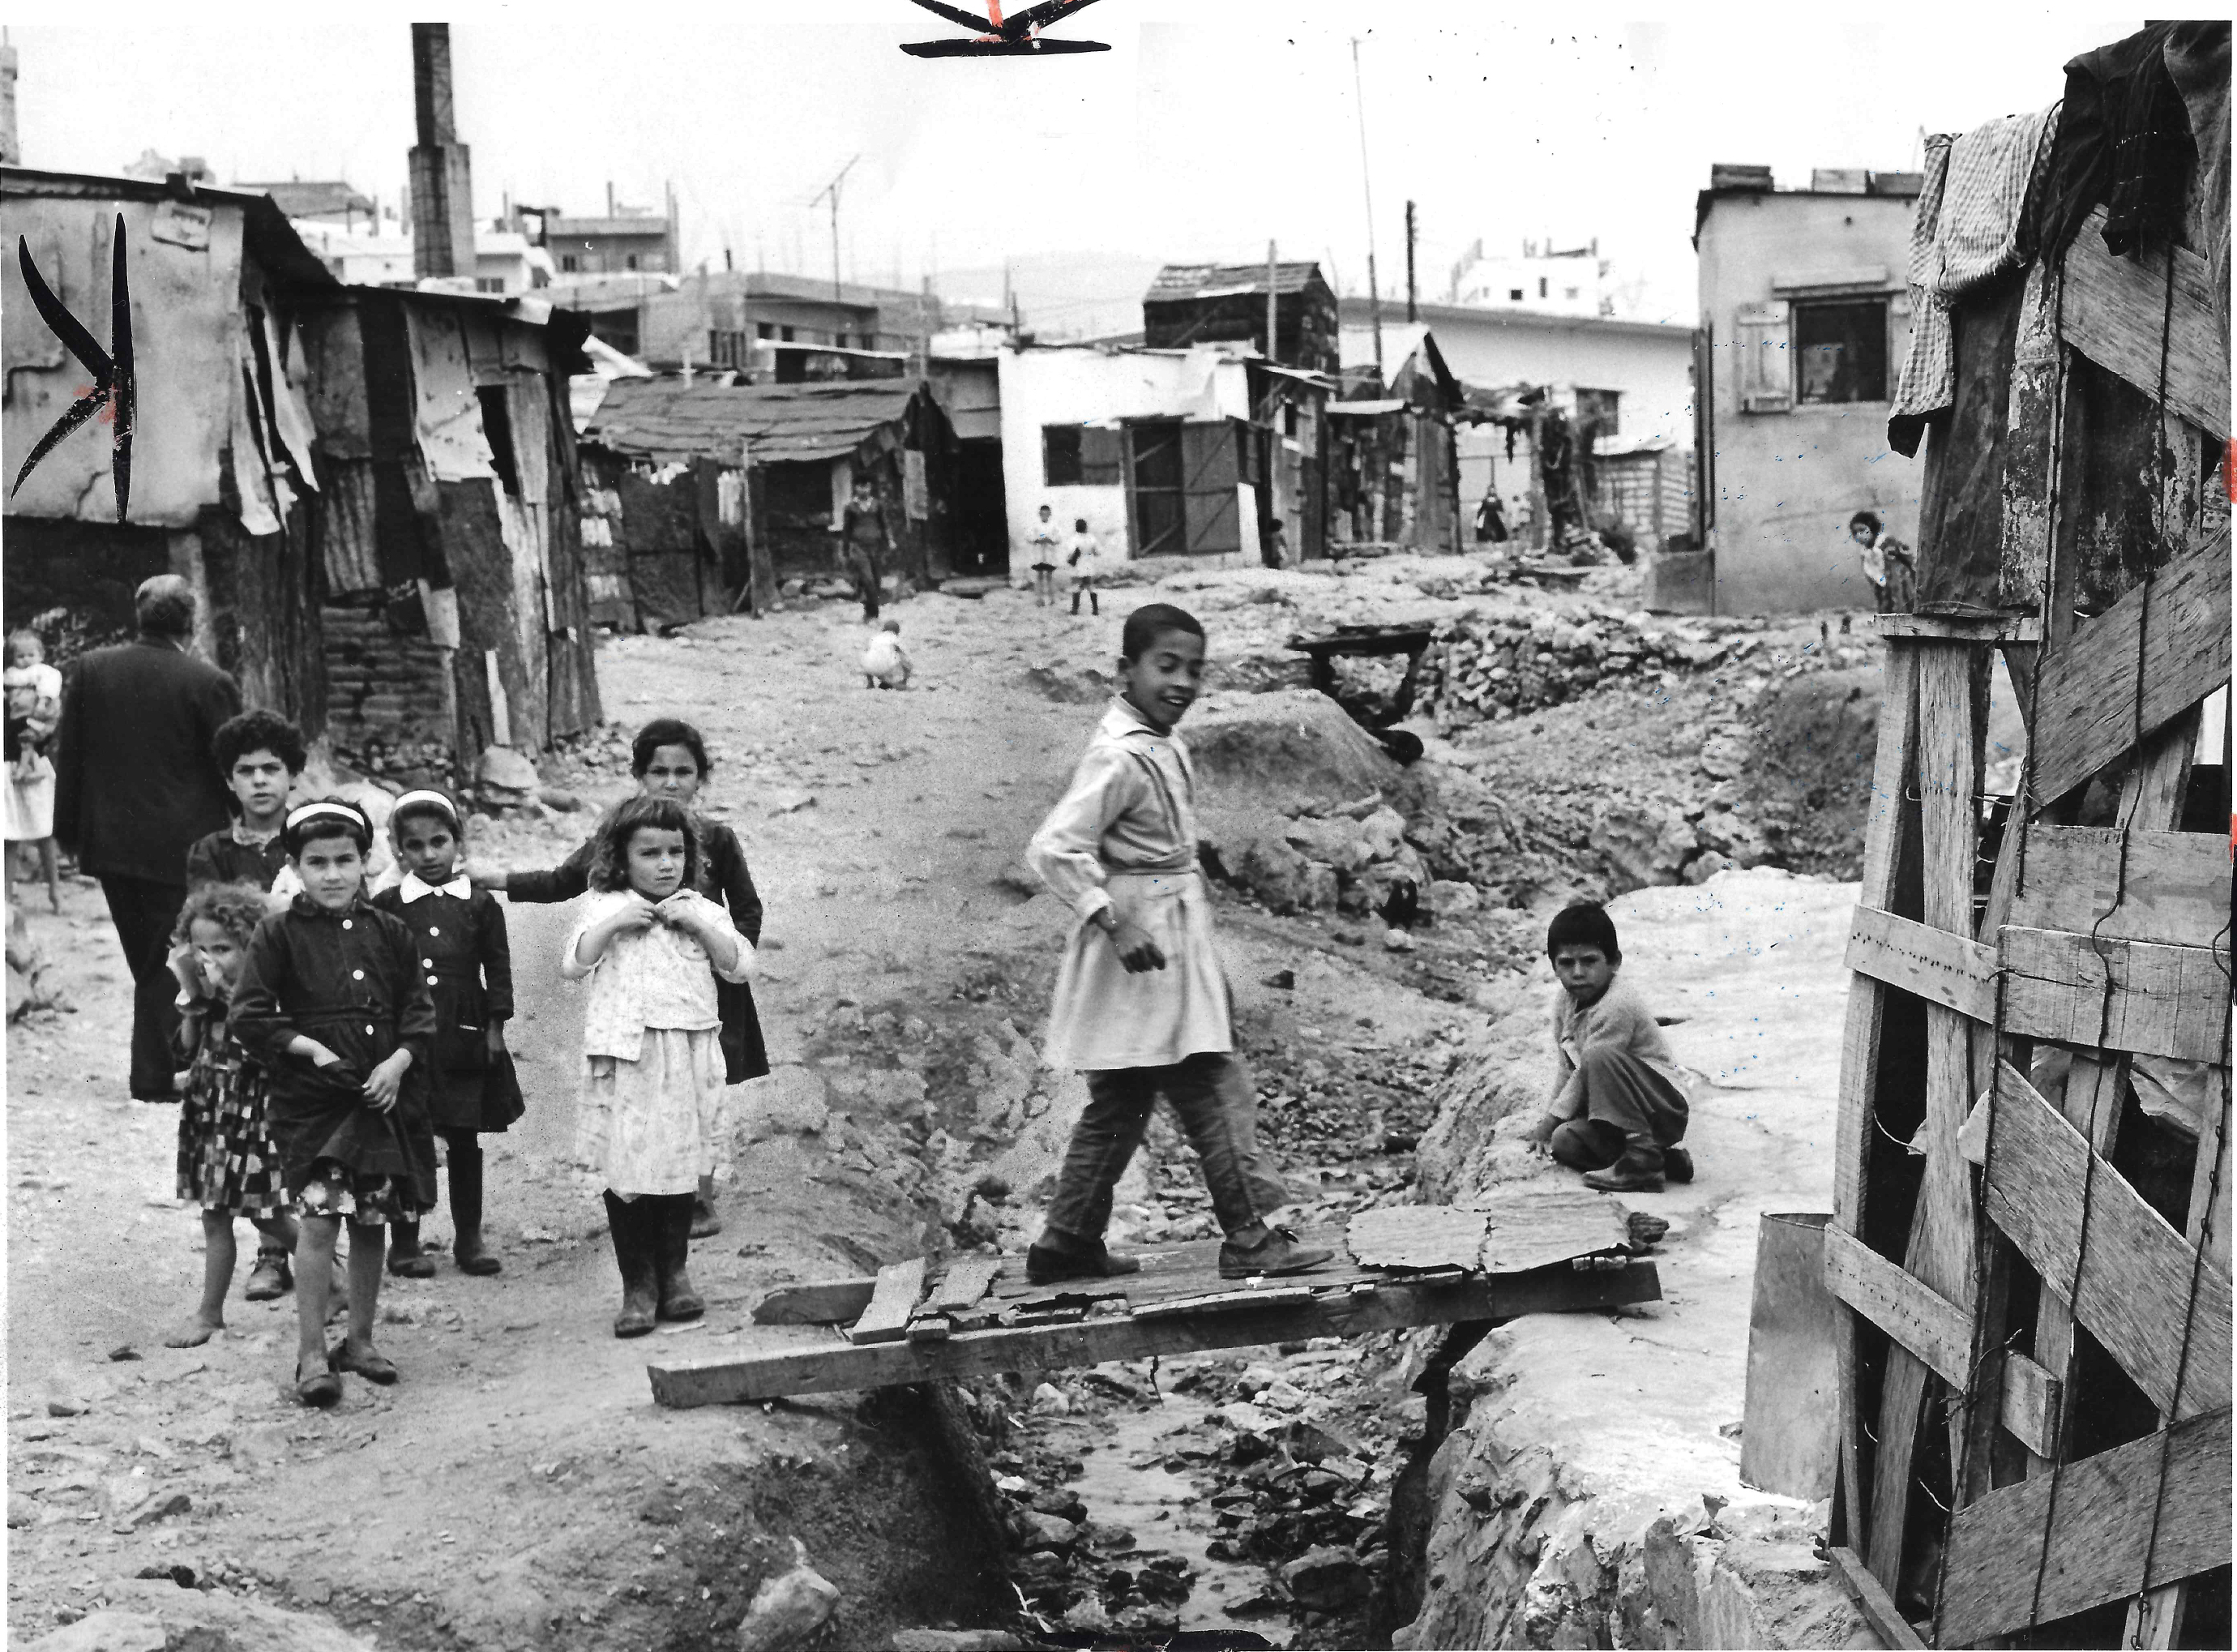  الدكوانة بالقرب من بيروت في لبنان عام 1969.jpg